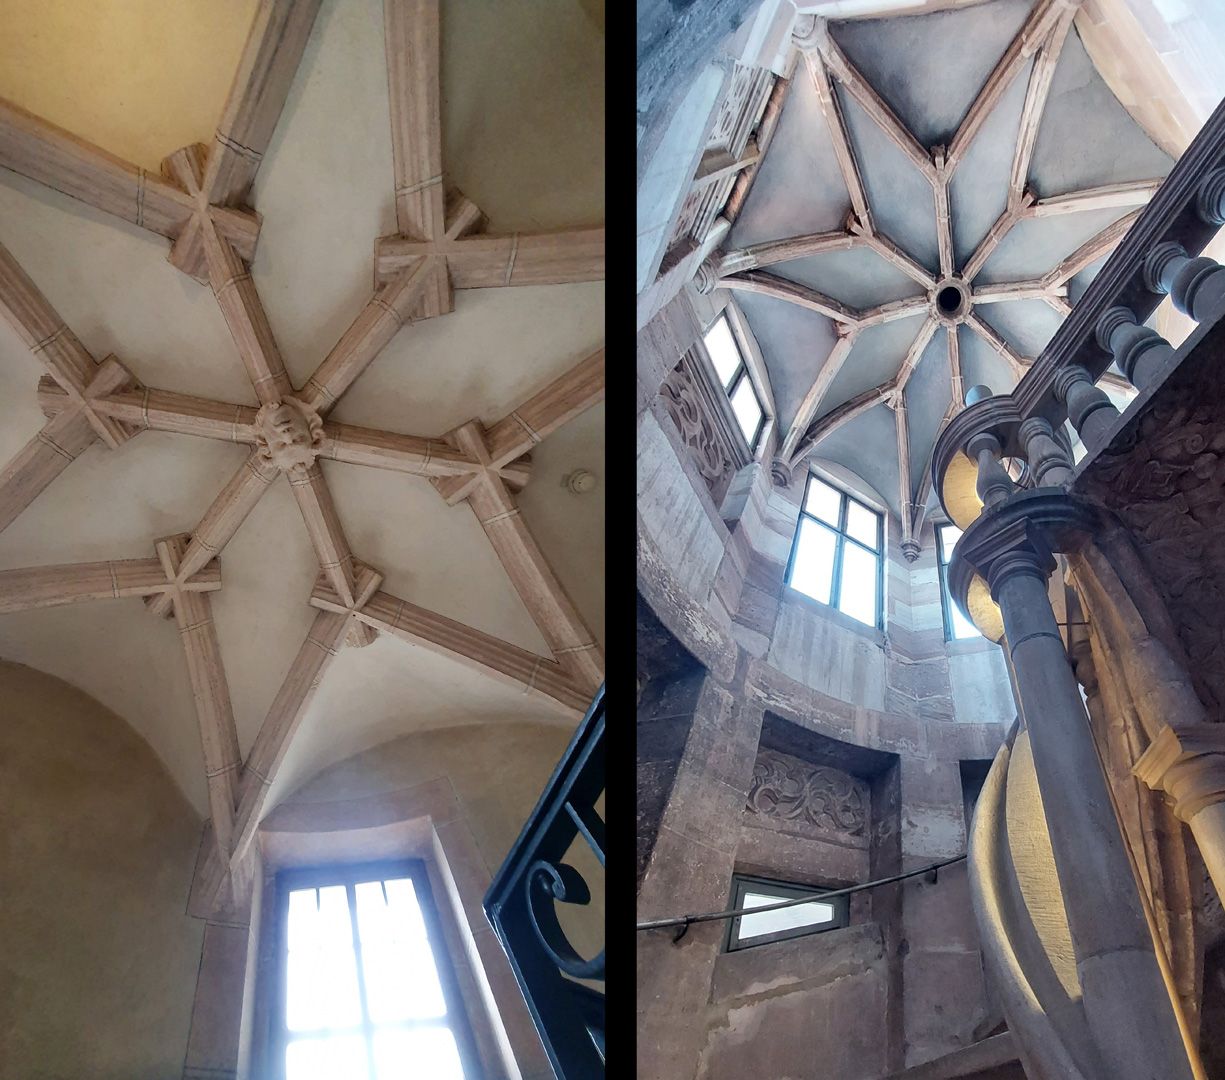 Ratsstubenbau Bildvergleich: links Treppe in Bamberg (1570) / rechts Treppe im Pellerhaus (1605), beide mit Rippendurchsteckungen